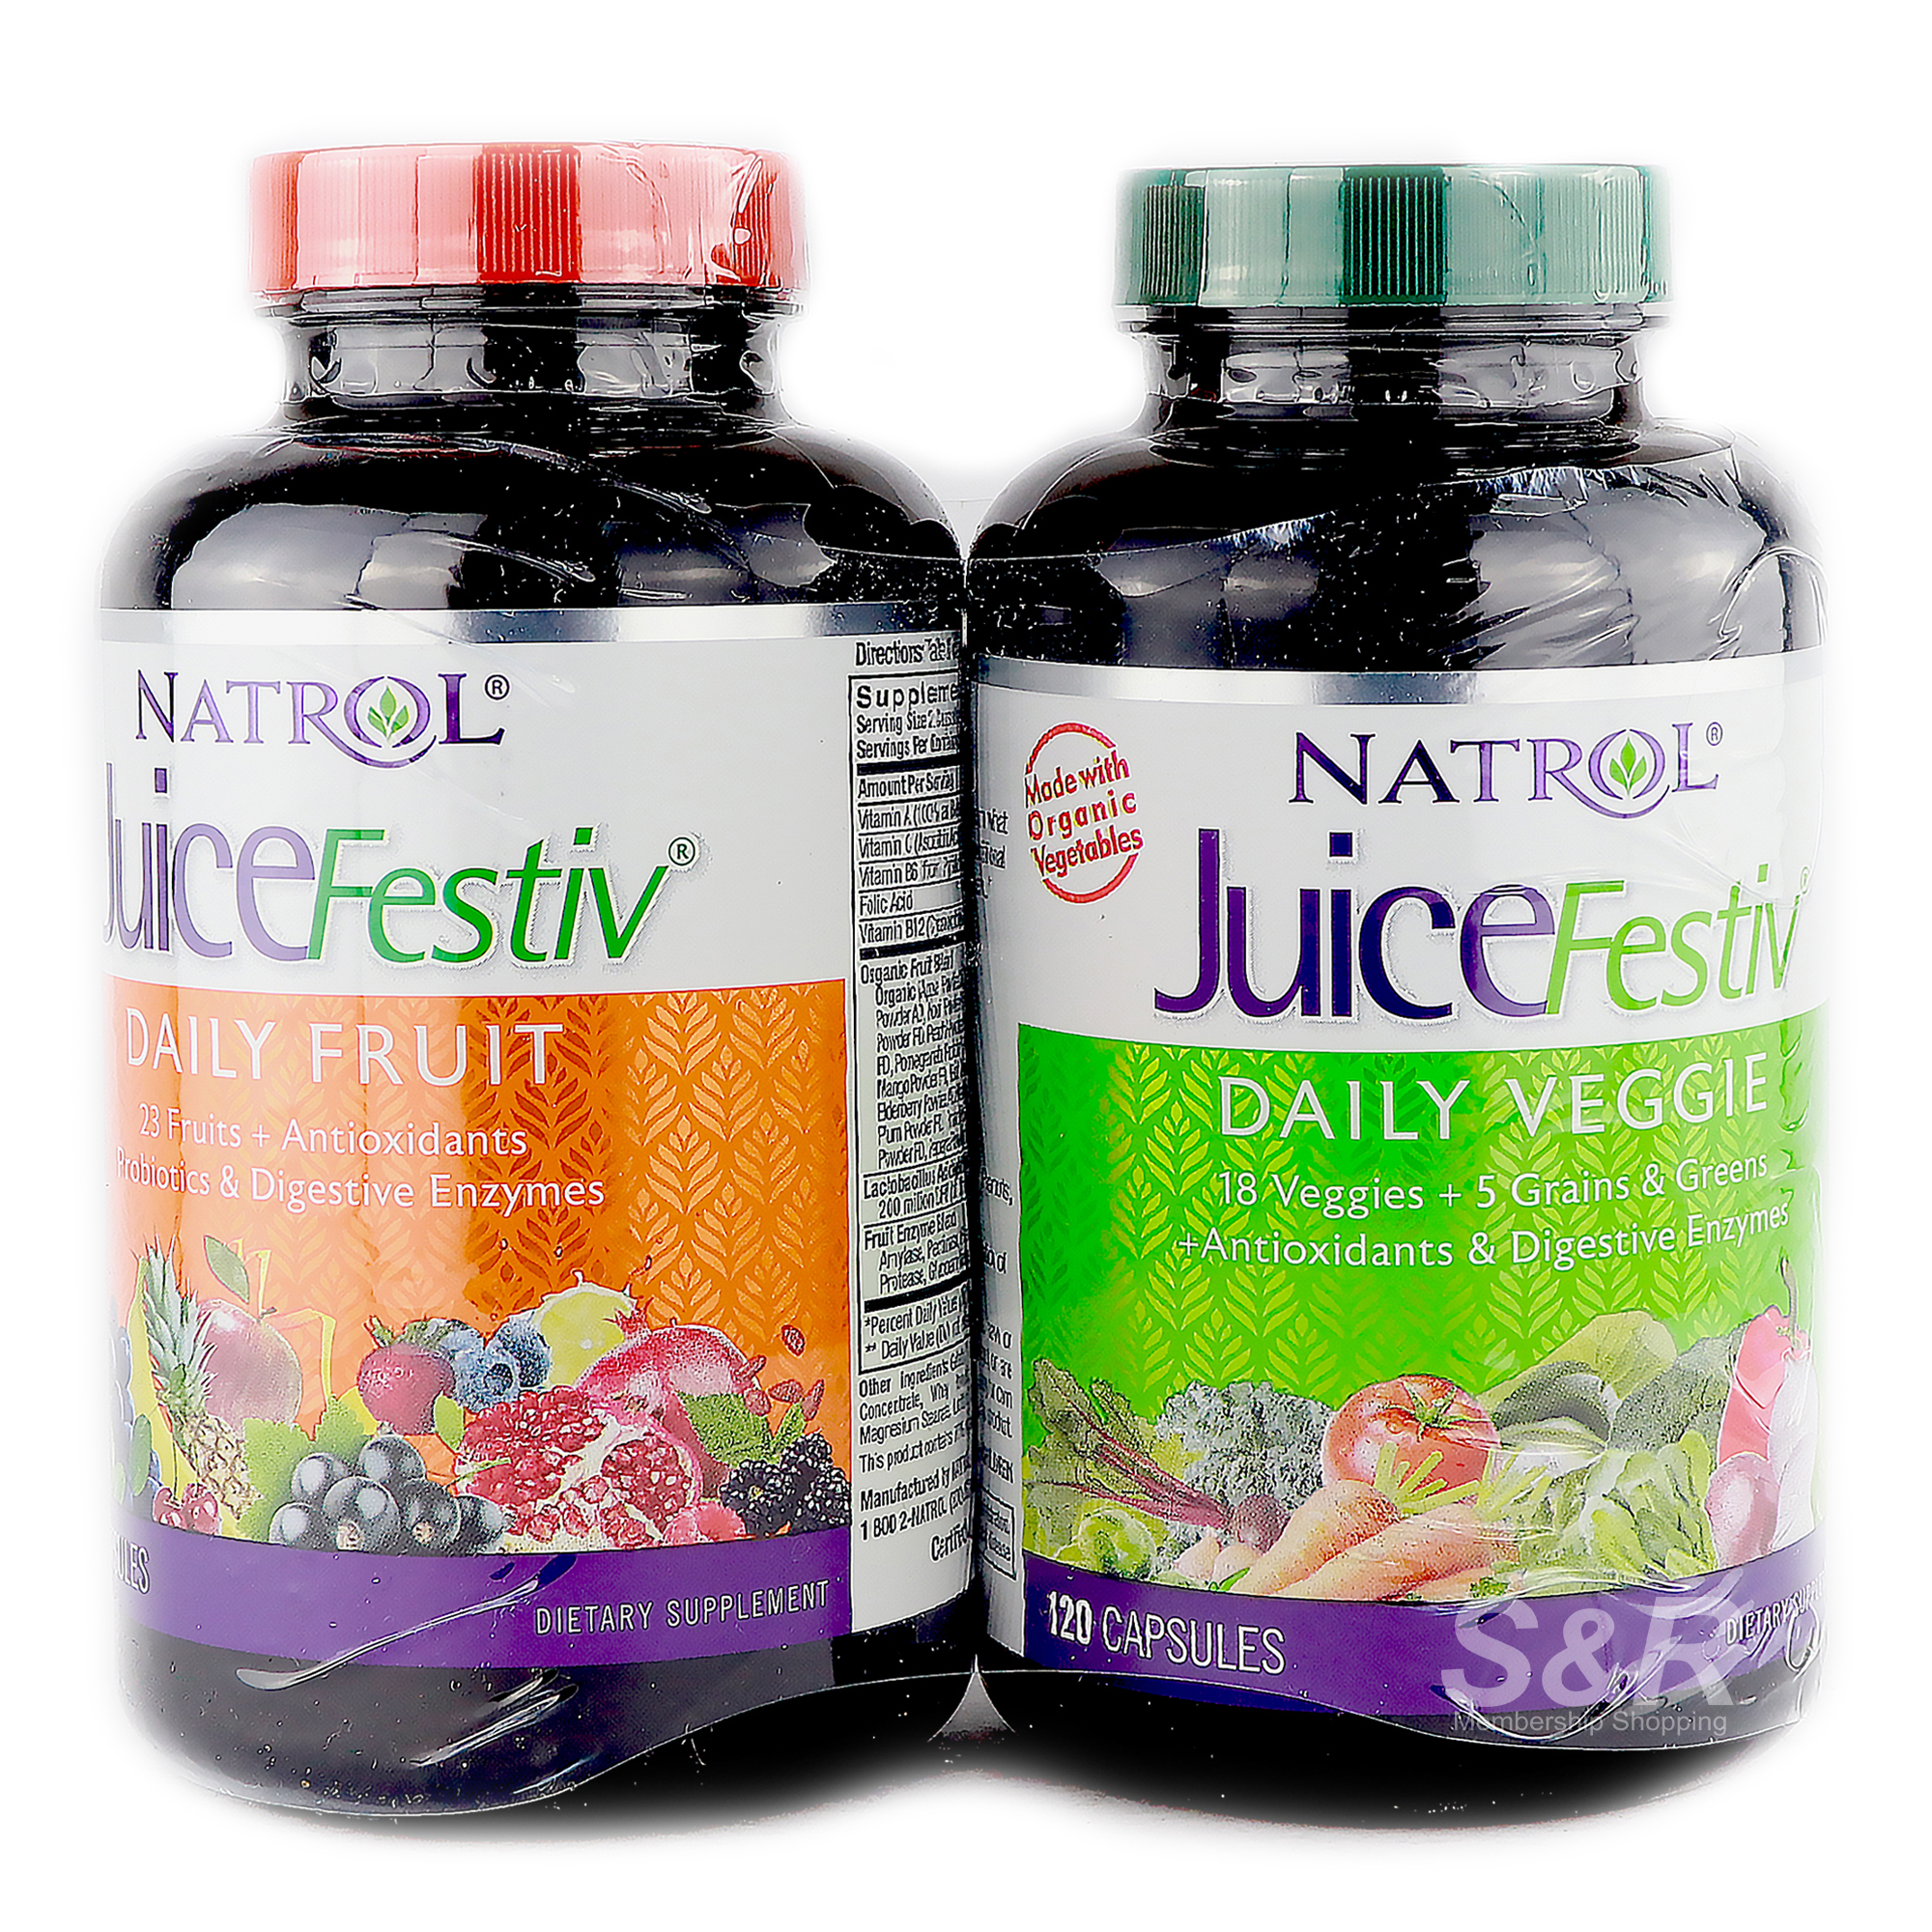 Natrol Juice Festiv Daily Fruit and Veggie Dietary Supplement 2 bottles